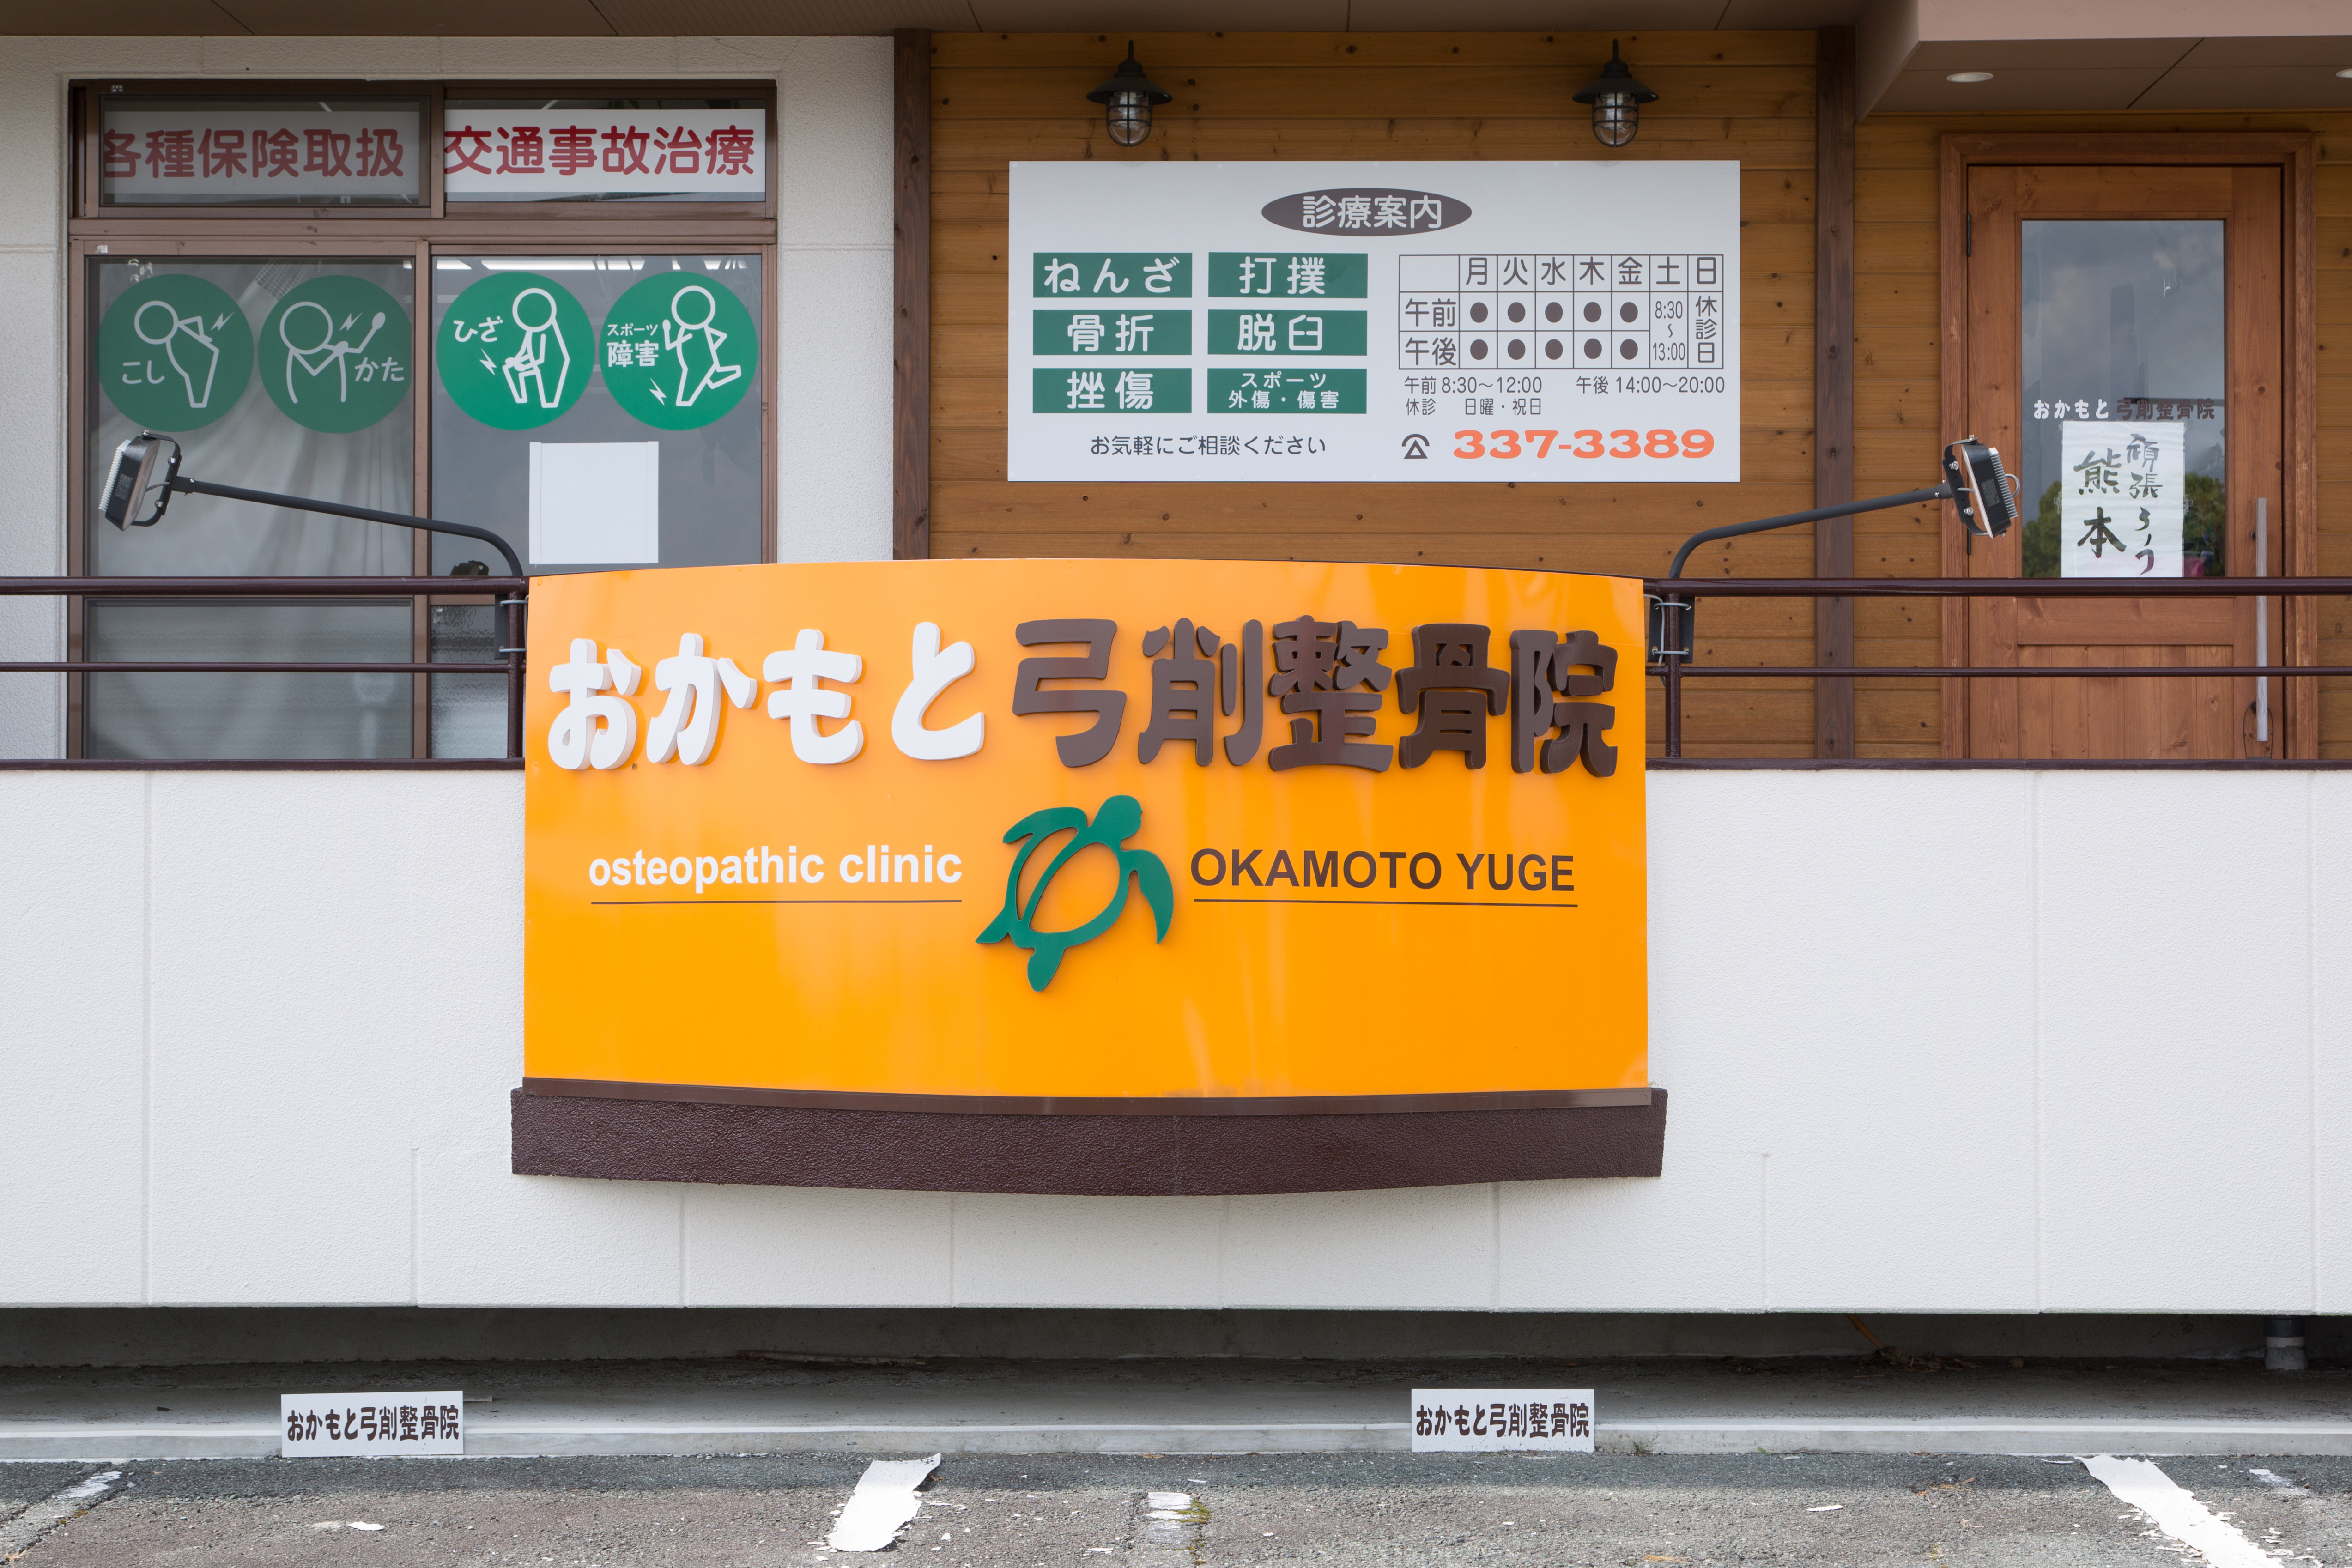 熊本市北区で信頼できるプロの施術をお探しならおかもと弓削整骨院へ